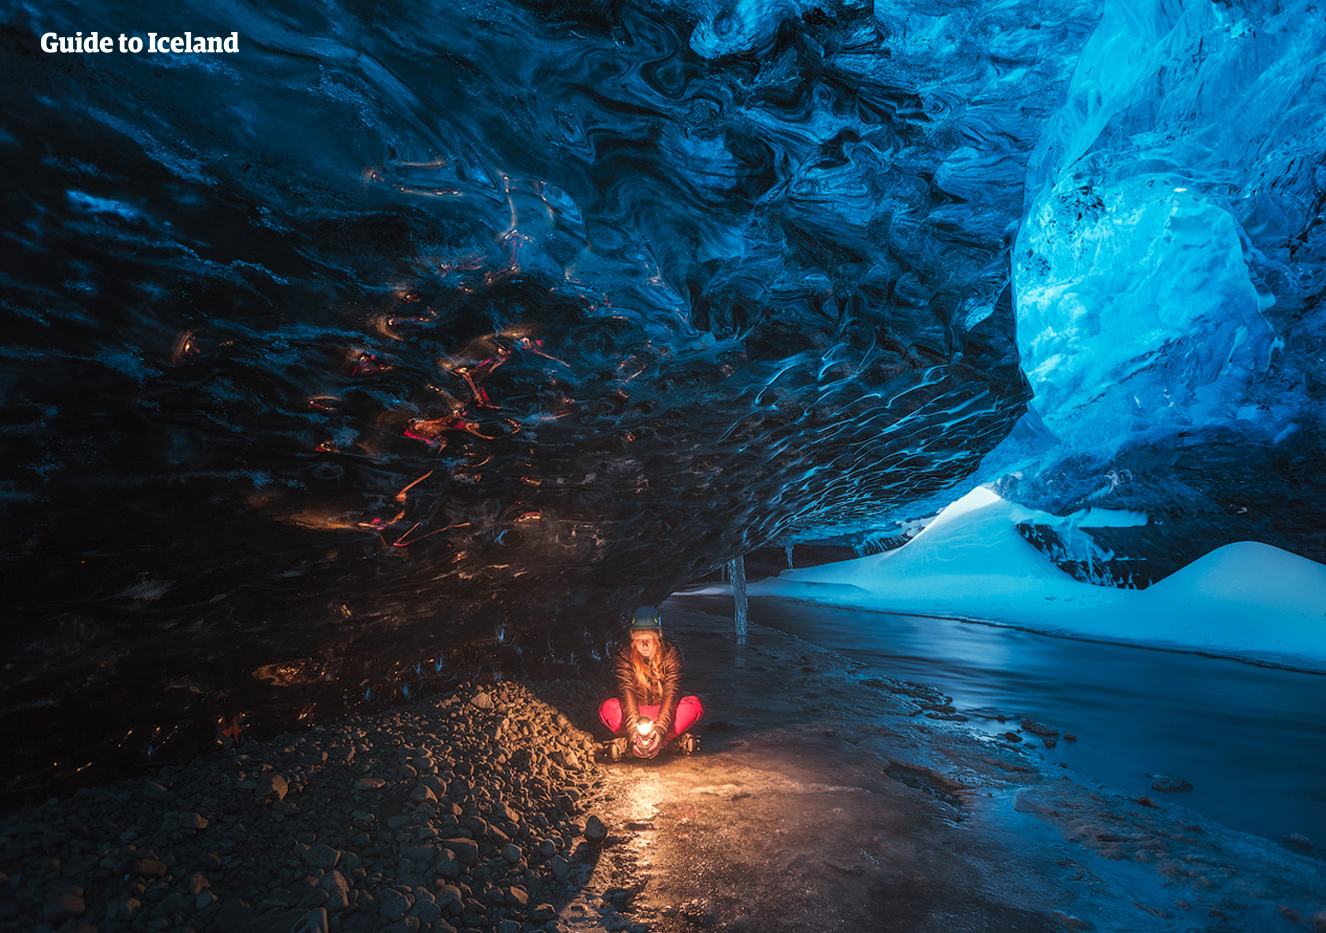 Eksploracja jaskini lodowej jest wyjątkowym doświadczeniem dostępnym tylko od listopada do marca.